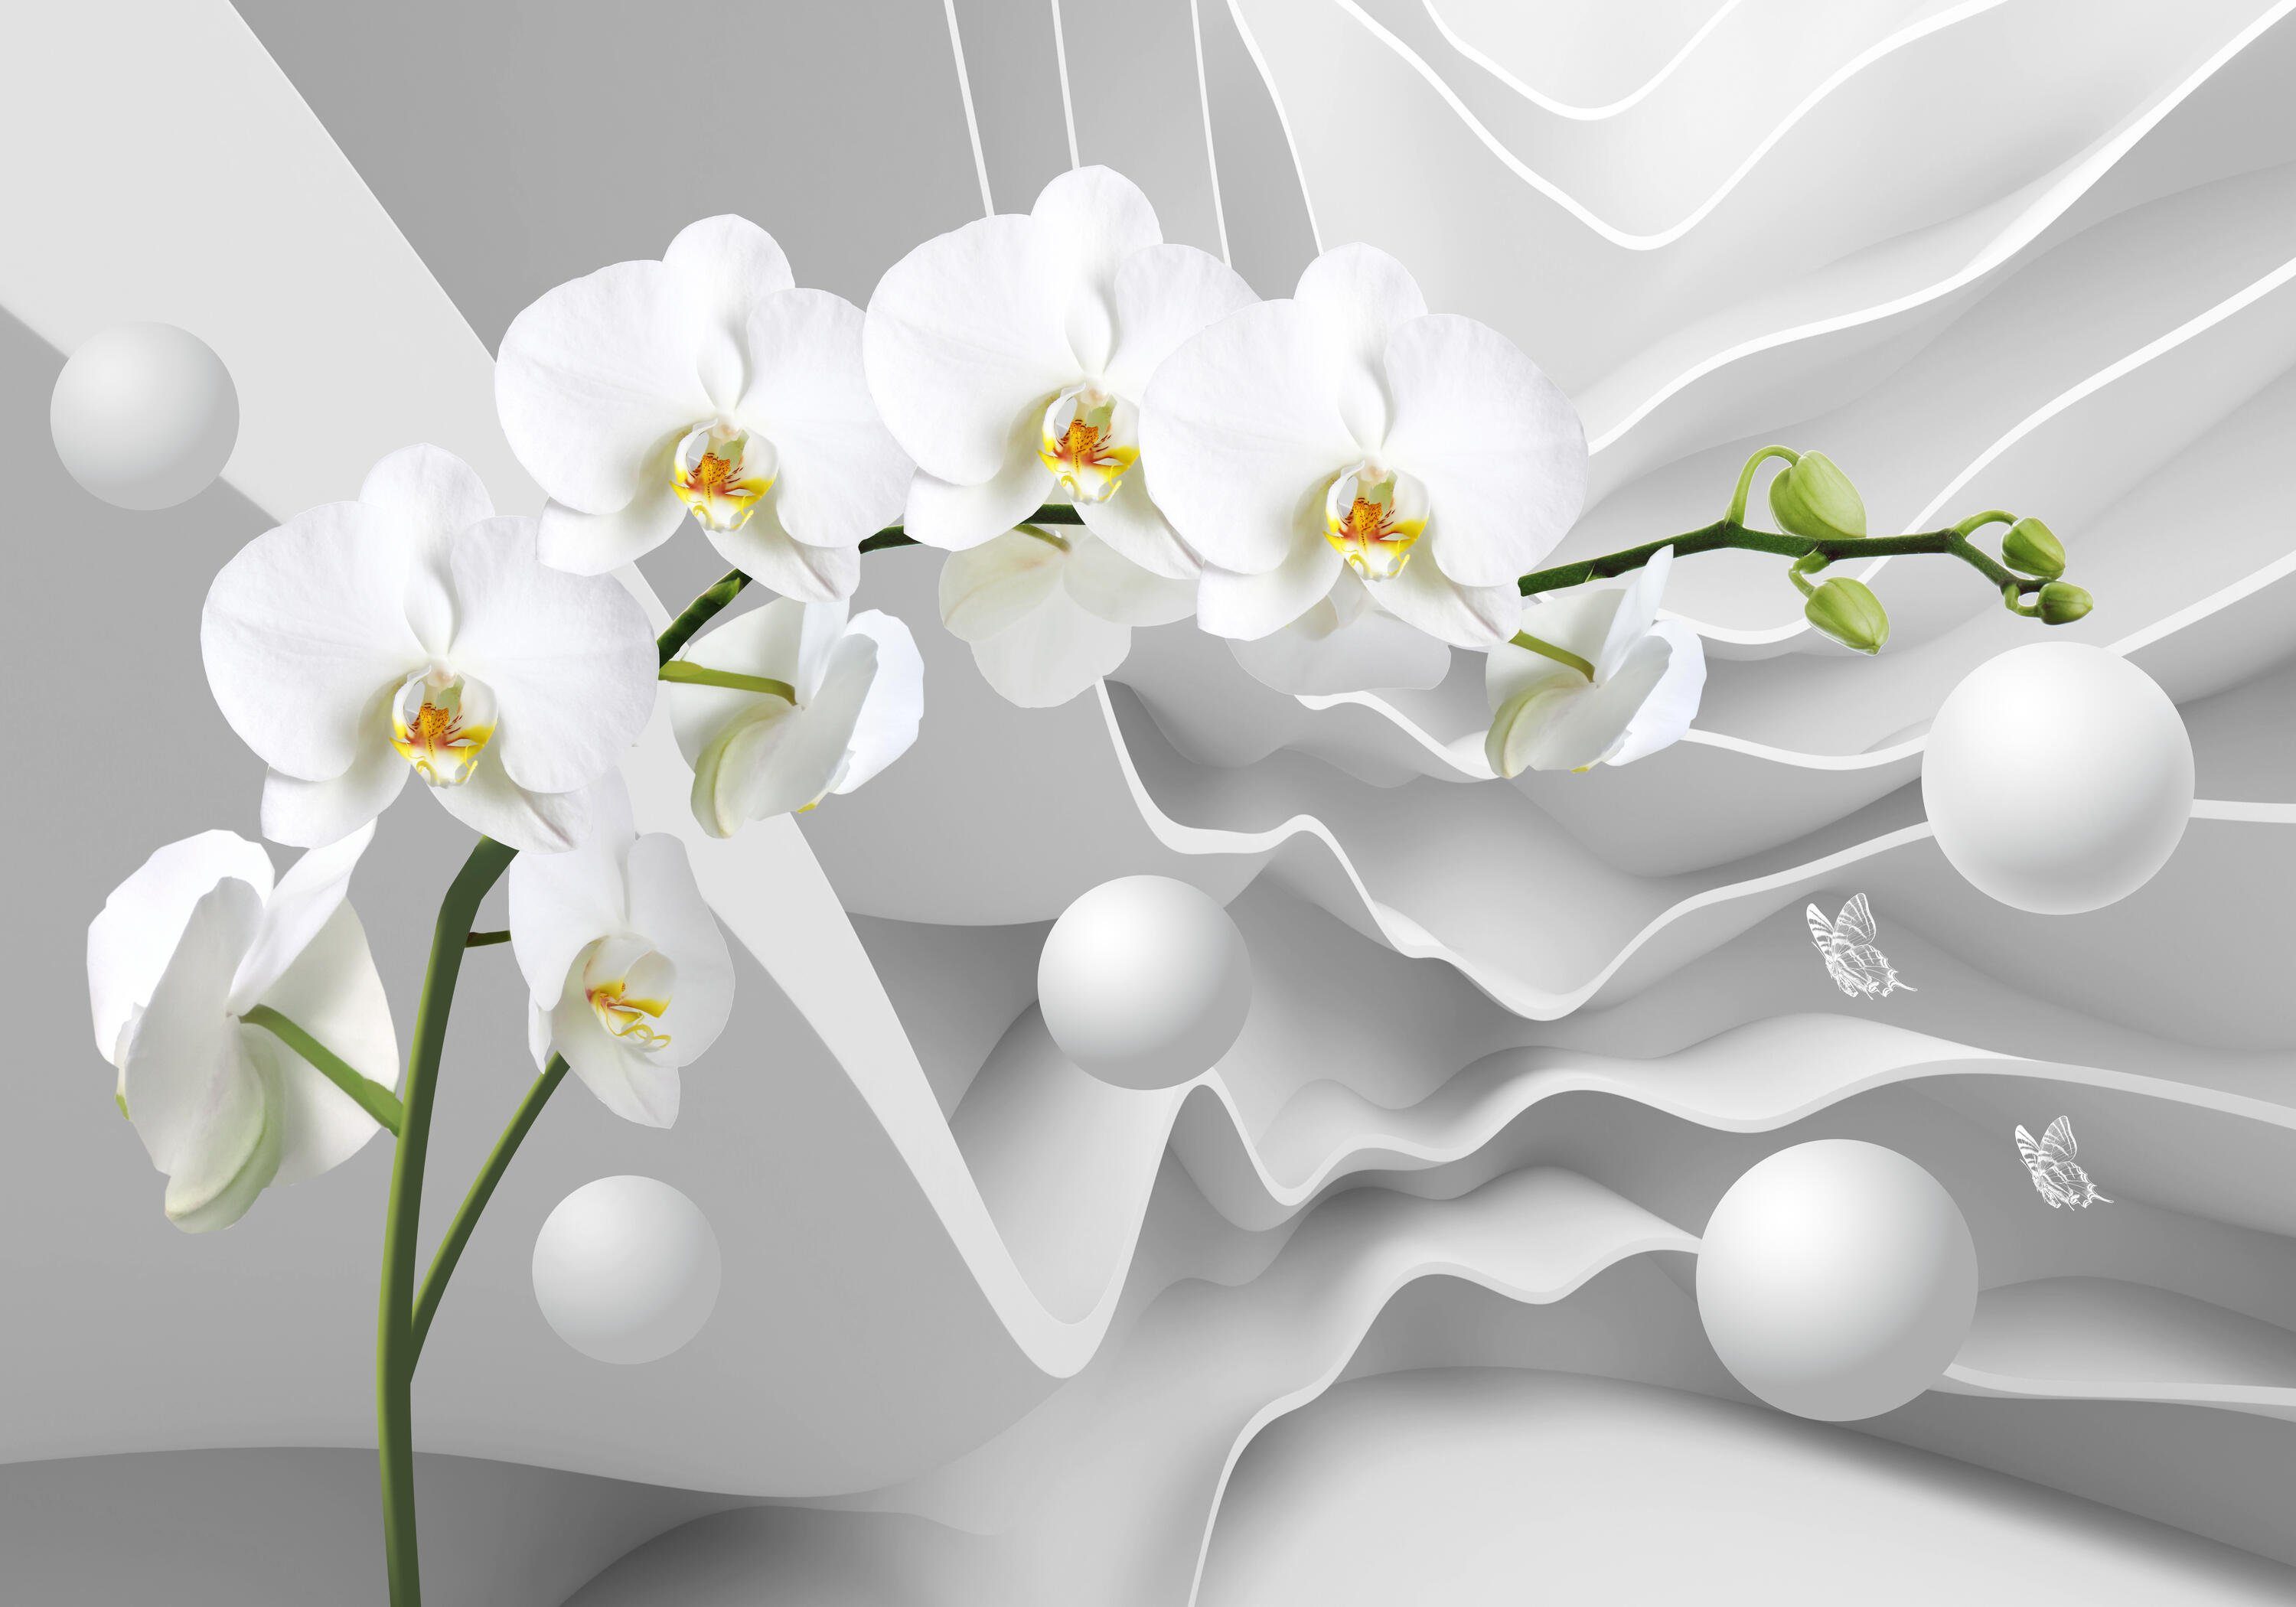 wandmotiv24 Fototapete 3D Effekt Blumen Orchideen Kugeln, glatt, Wandtapete, Motivtapete, matt, Vliestapete